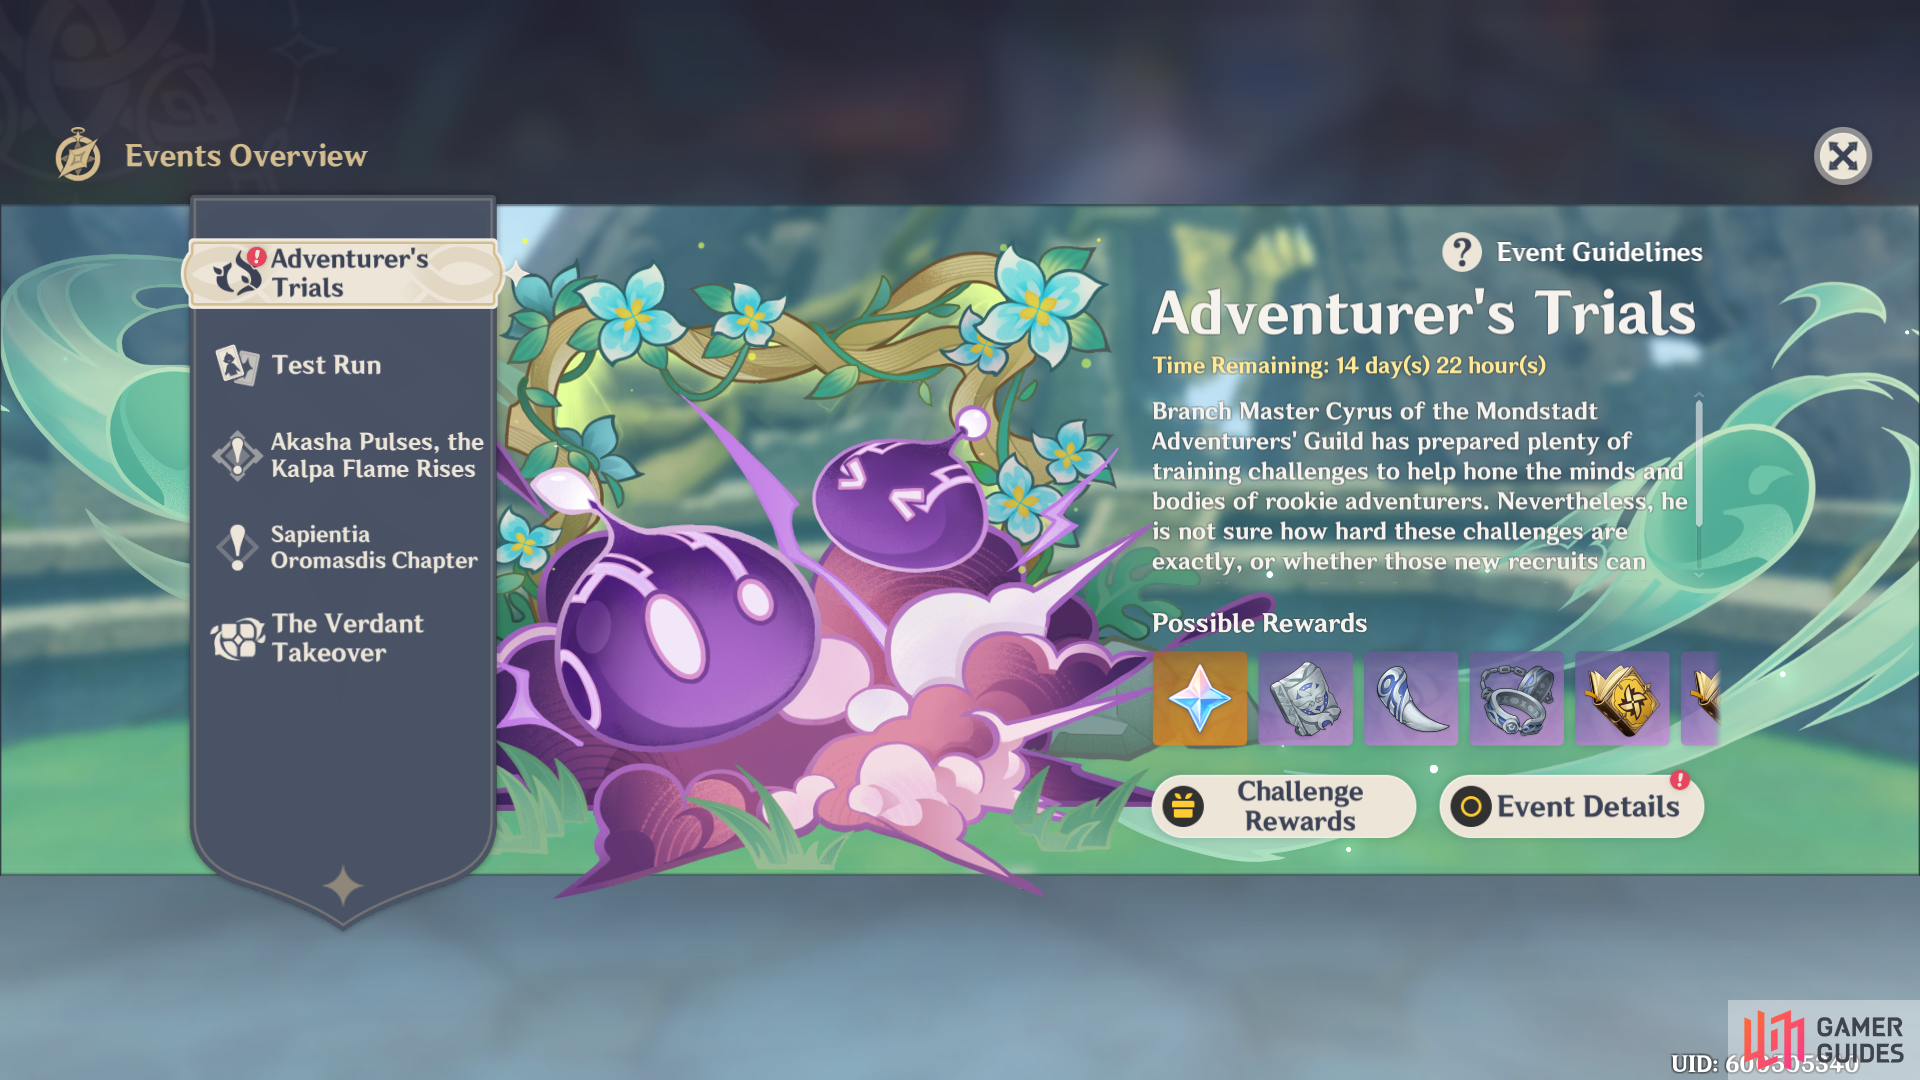 Adventurer's Trials event banner in Genshin Impact version 3.2.